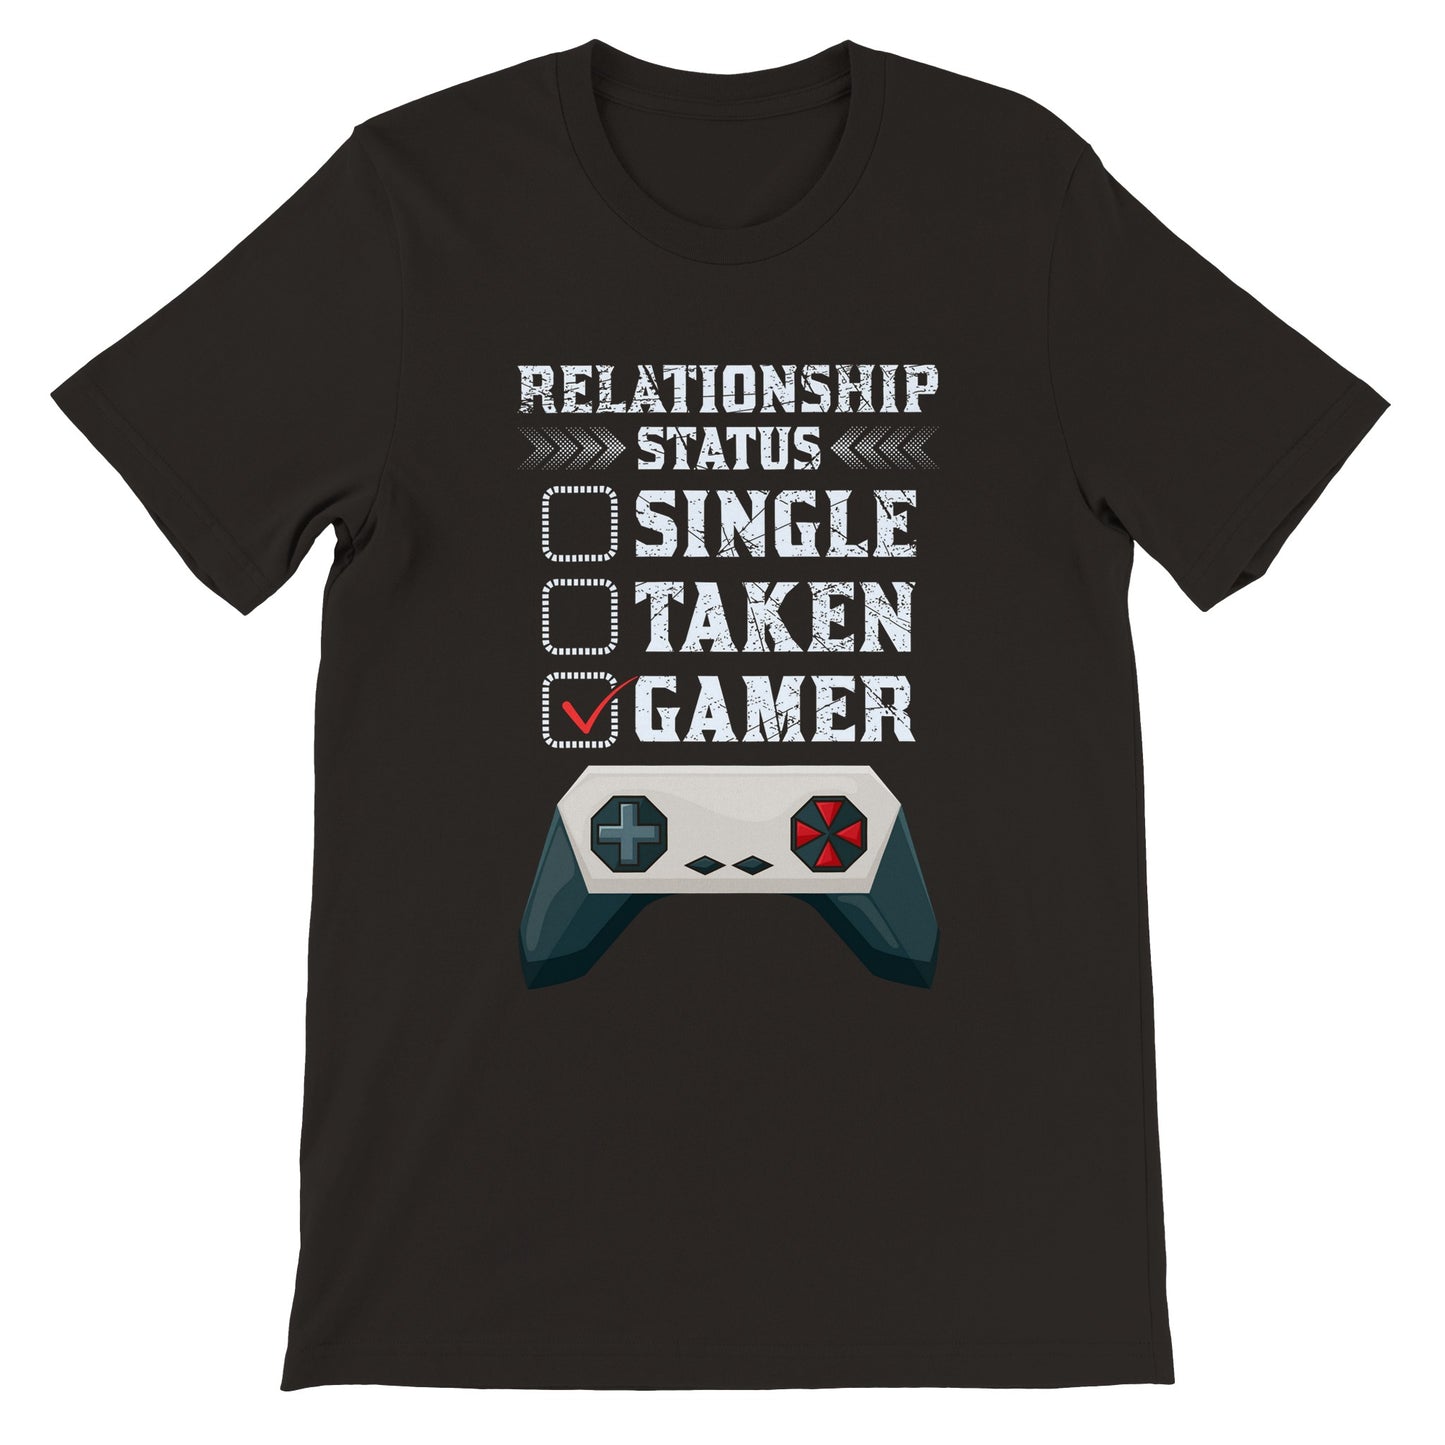 Gaming T-shirts - Relationship Status Single Taken Gamer - Premium Unisex T-shirt 